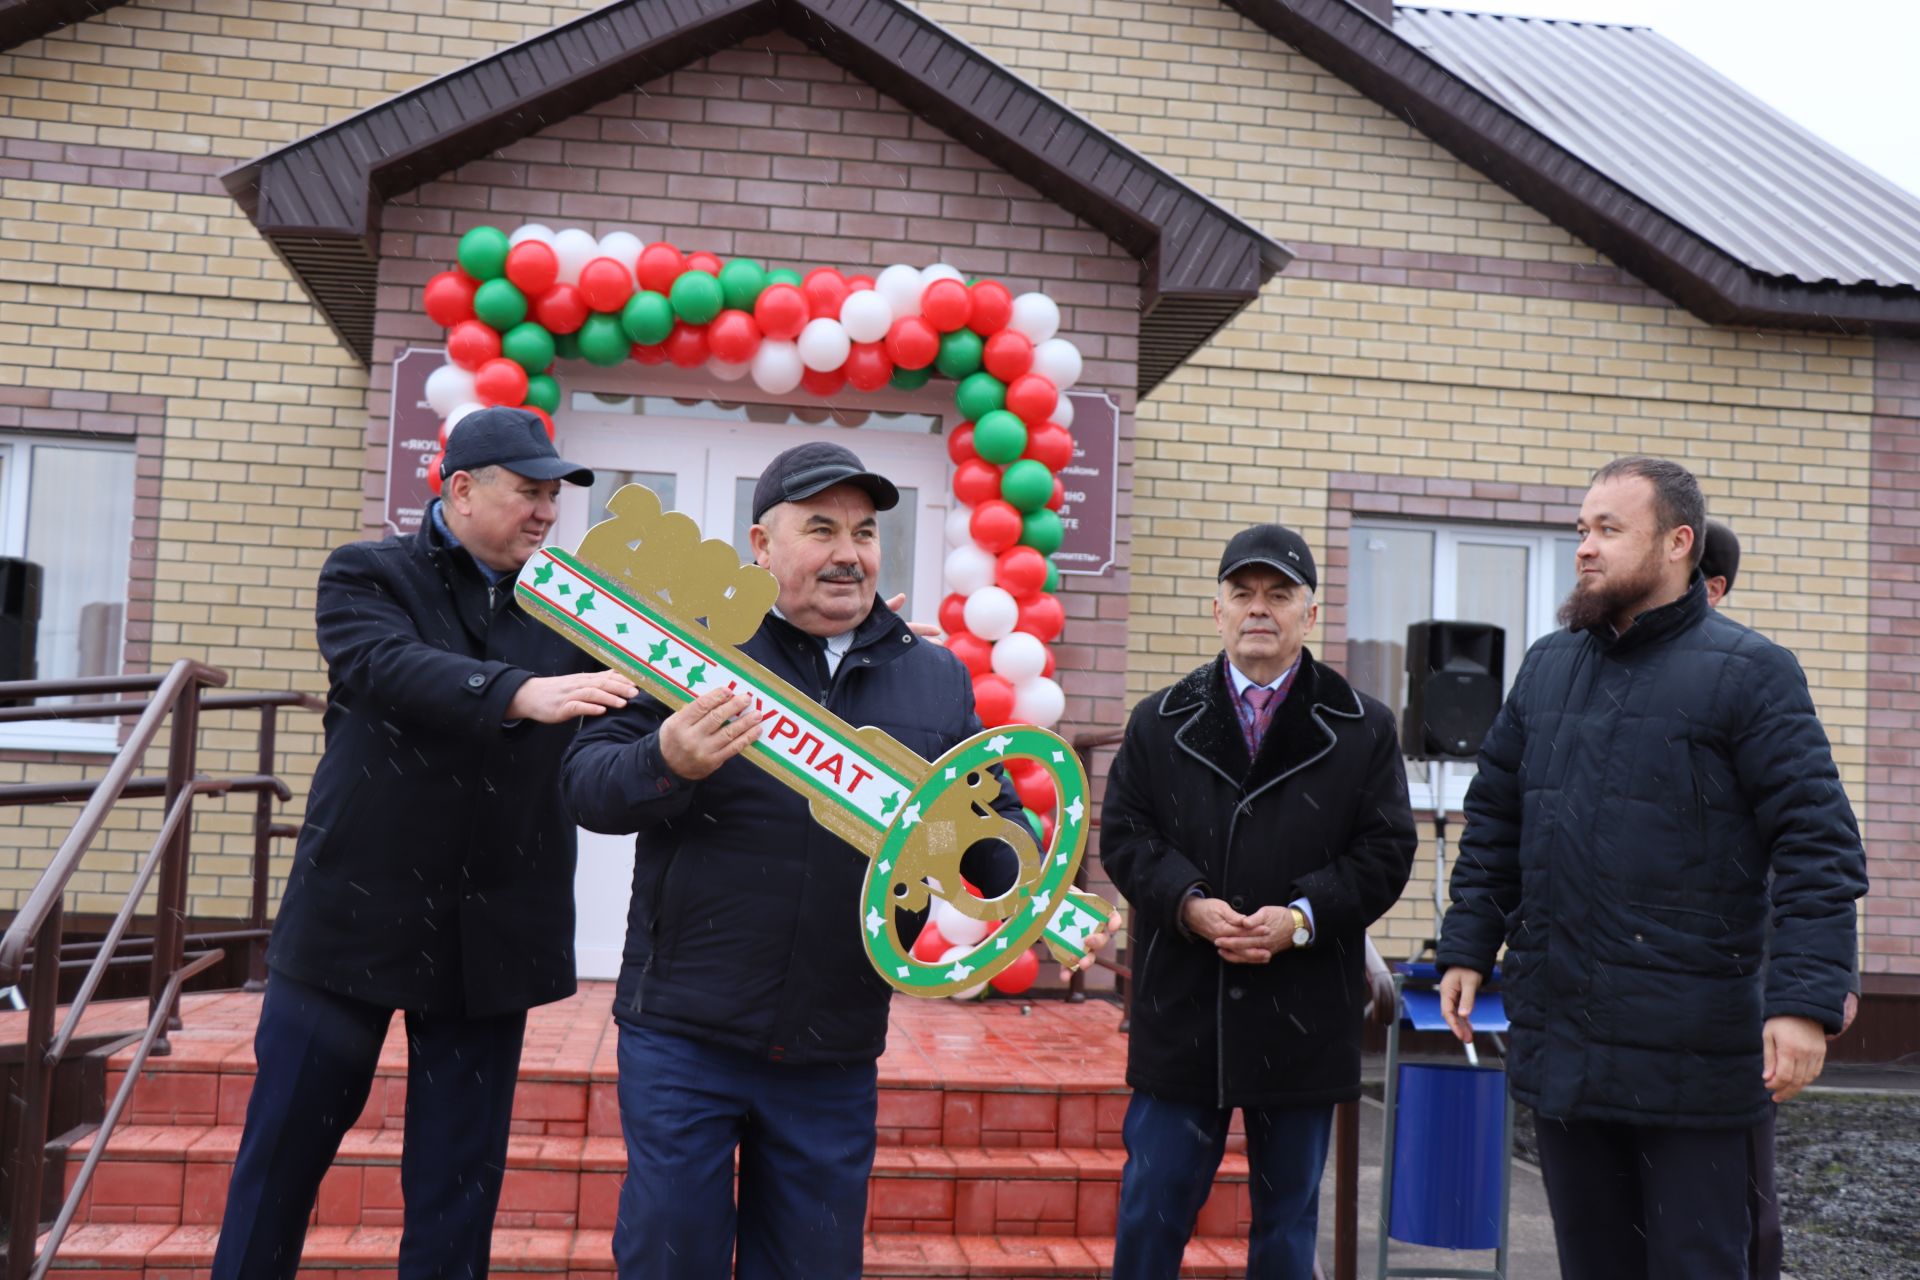 В селе Якушкино Нурлатского района состоялось торжественное открытие нового здания исполкома